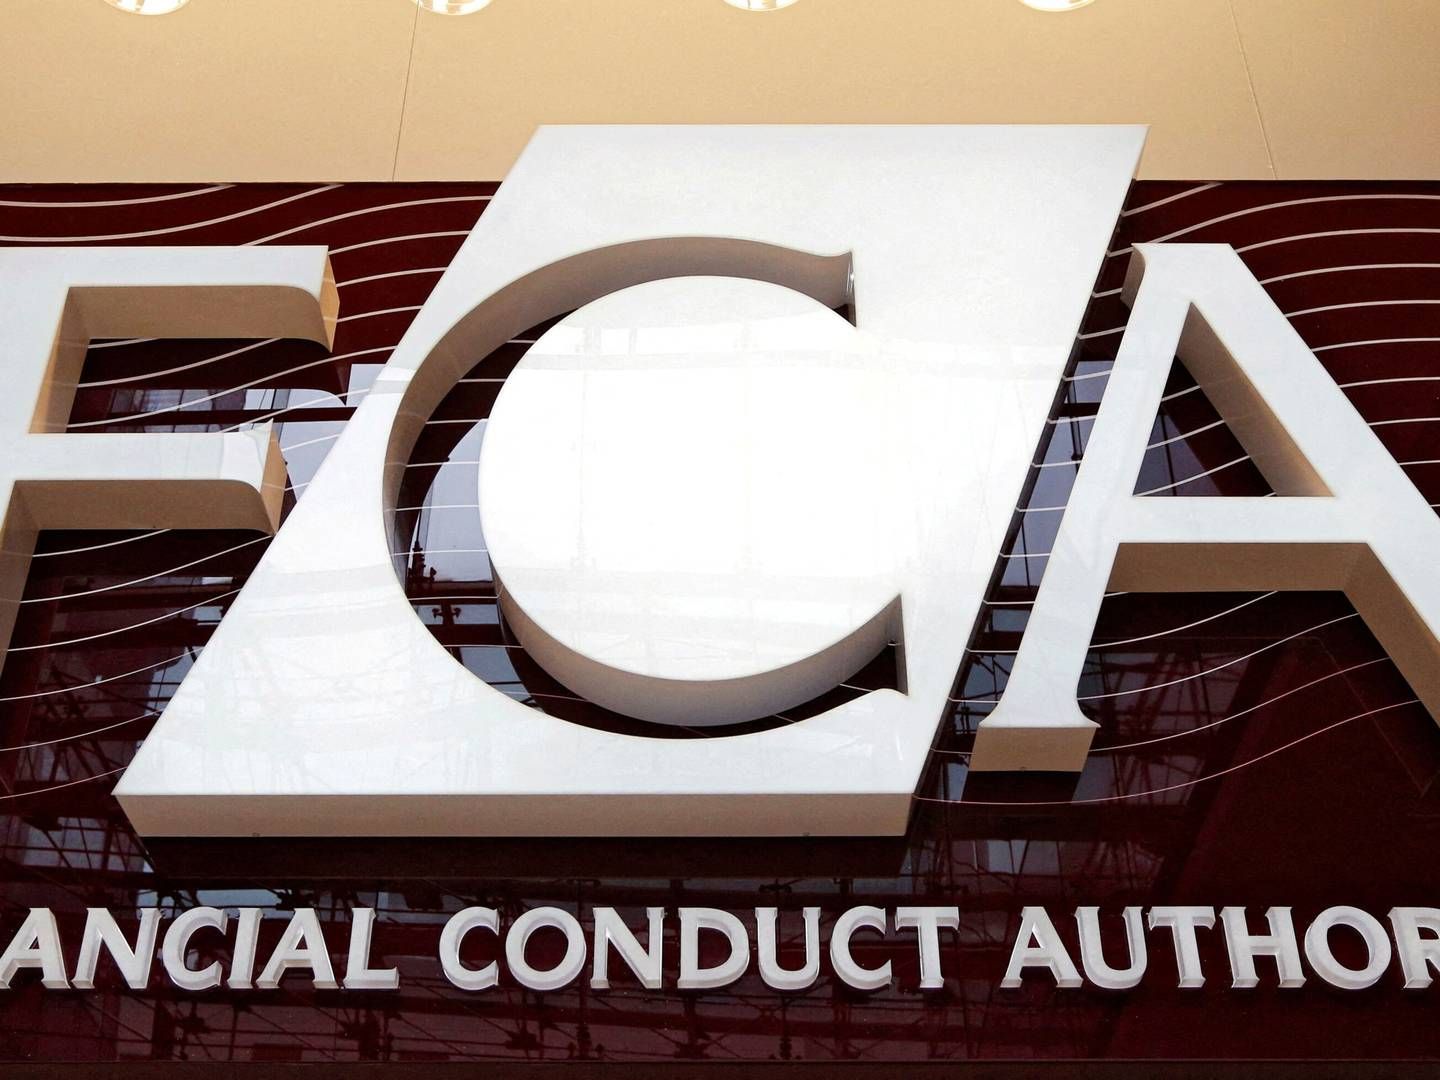 Den britiske myndighed FCA advarer en række betalingsvirksomheder mod kraftig indgriben, hvis ikke de retter op på fejl og svagheder. | Foto: Chris Helgren/Reuters/Ritzau Scanpix